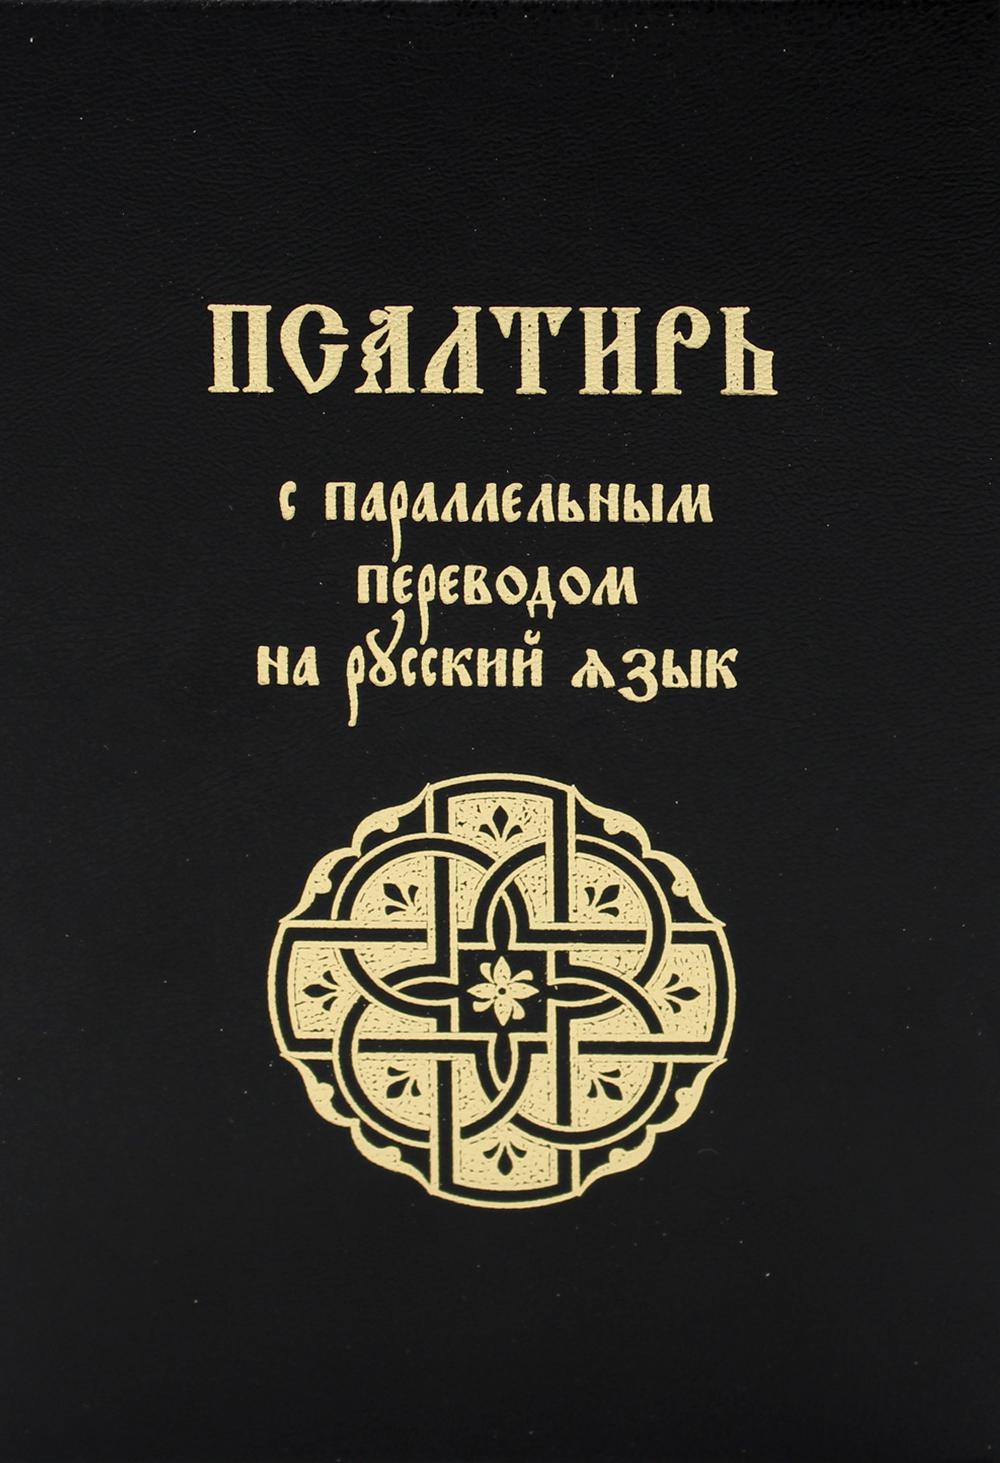 фото Книга псалтирь с параллельным переводом на русский язык лепта